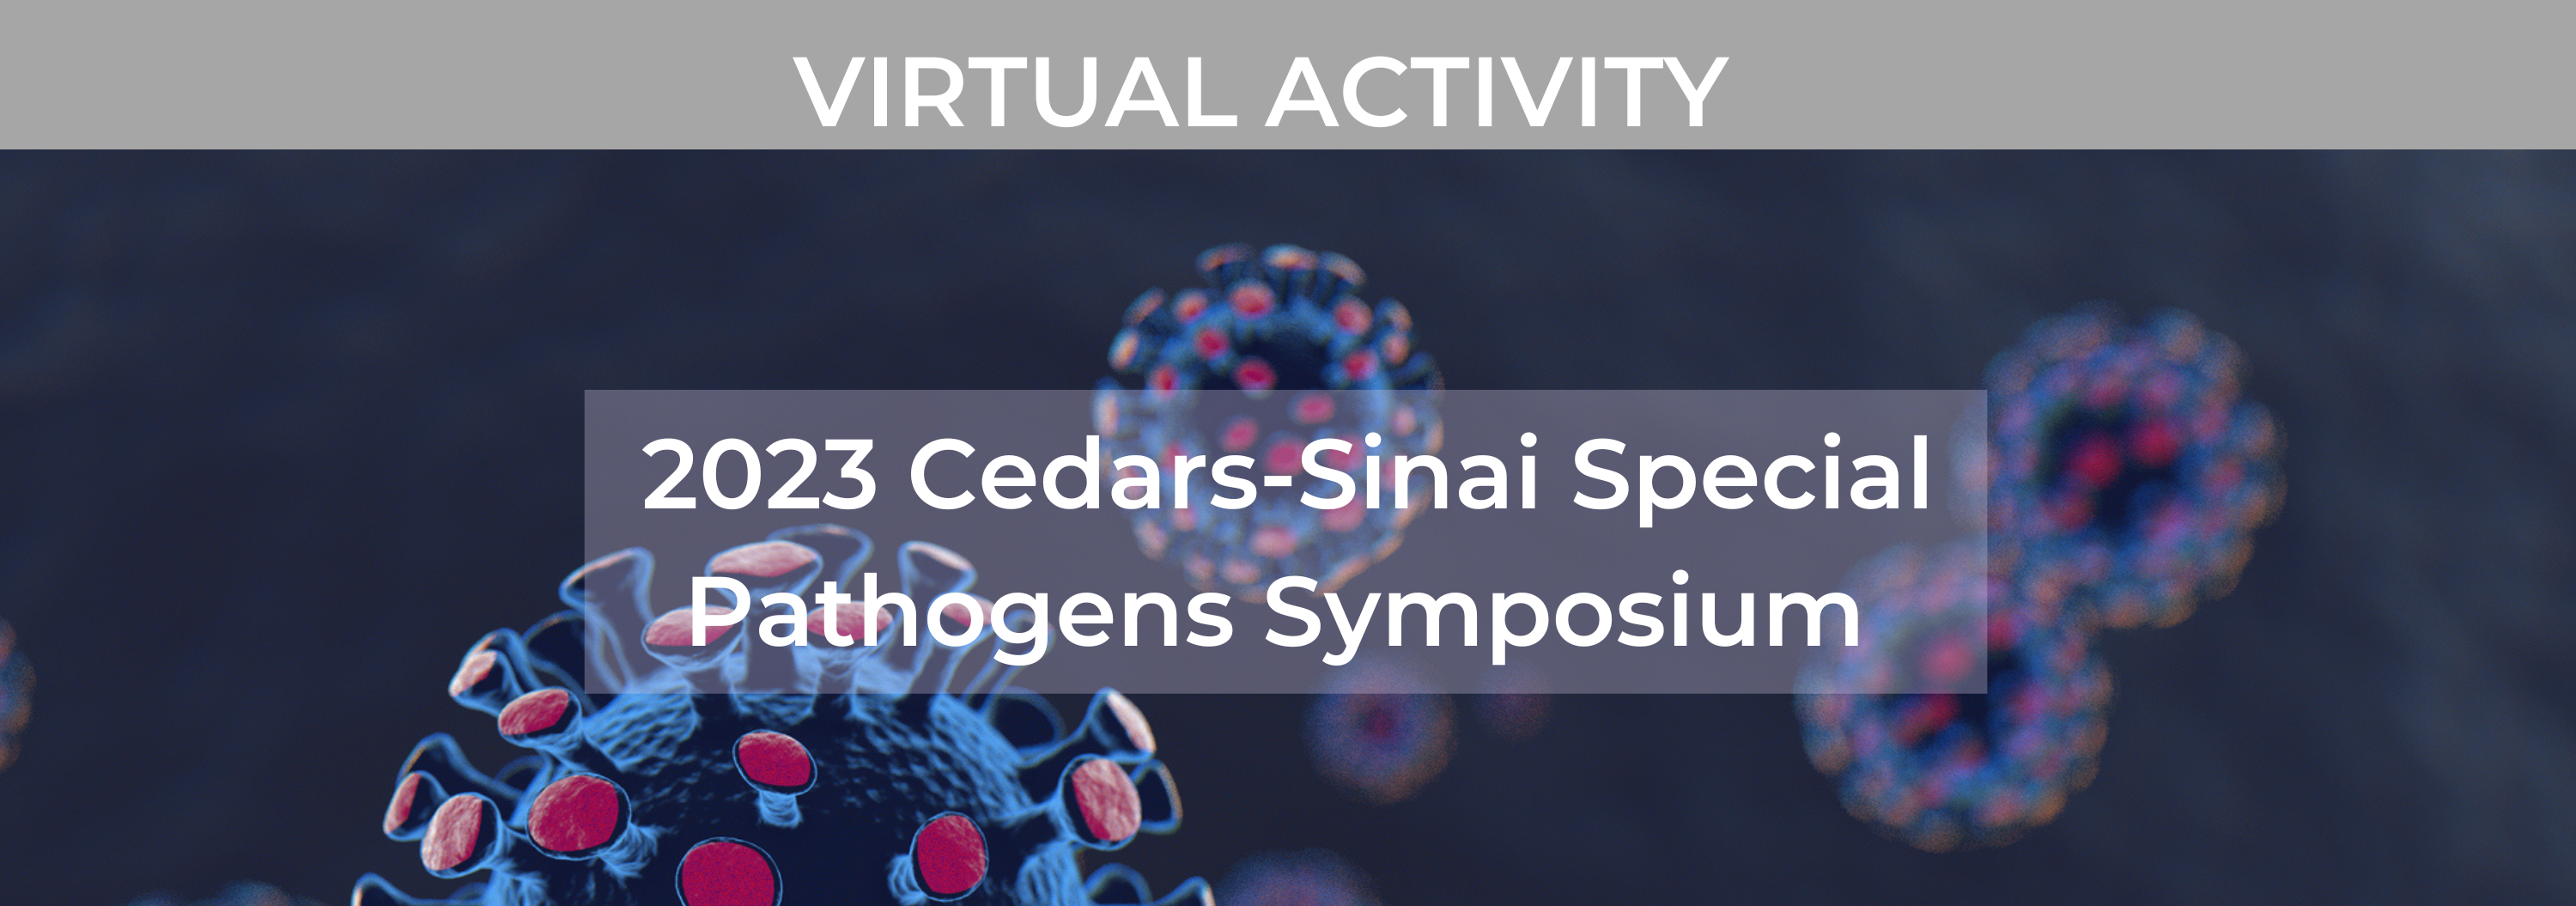 2023 Cedars-Sinai Special Pathogens Symposium Banner